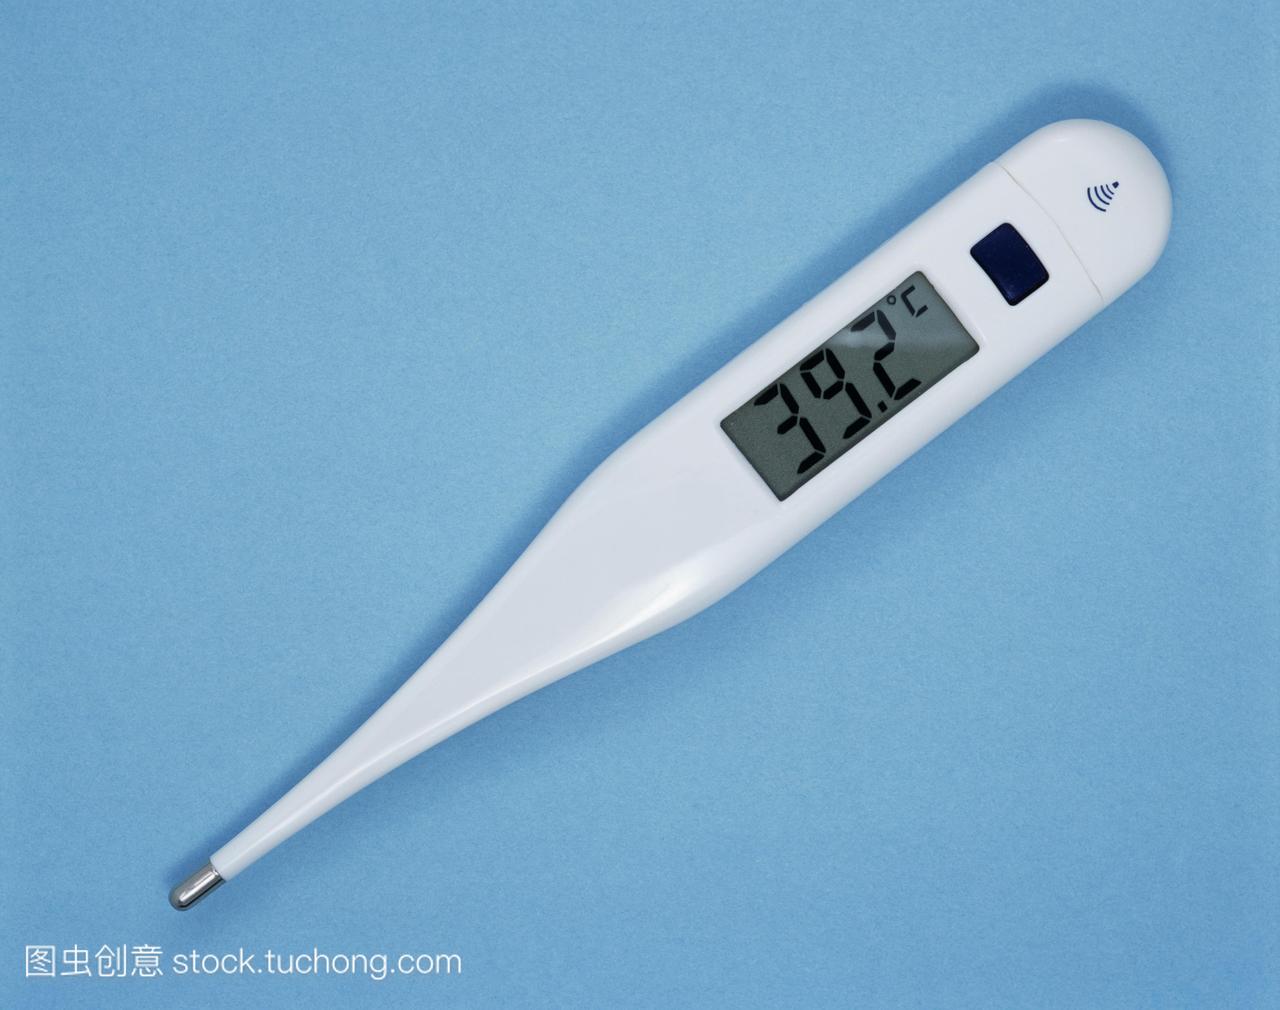 发烧。数字温度计显示温度392摄氏度。这表明